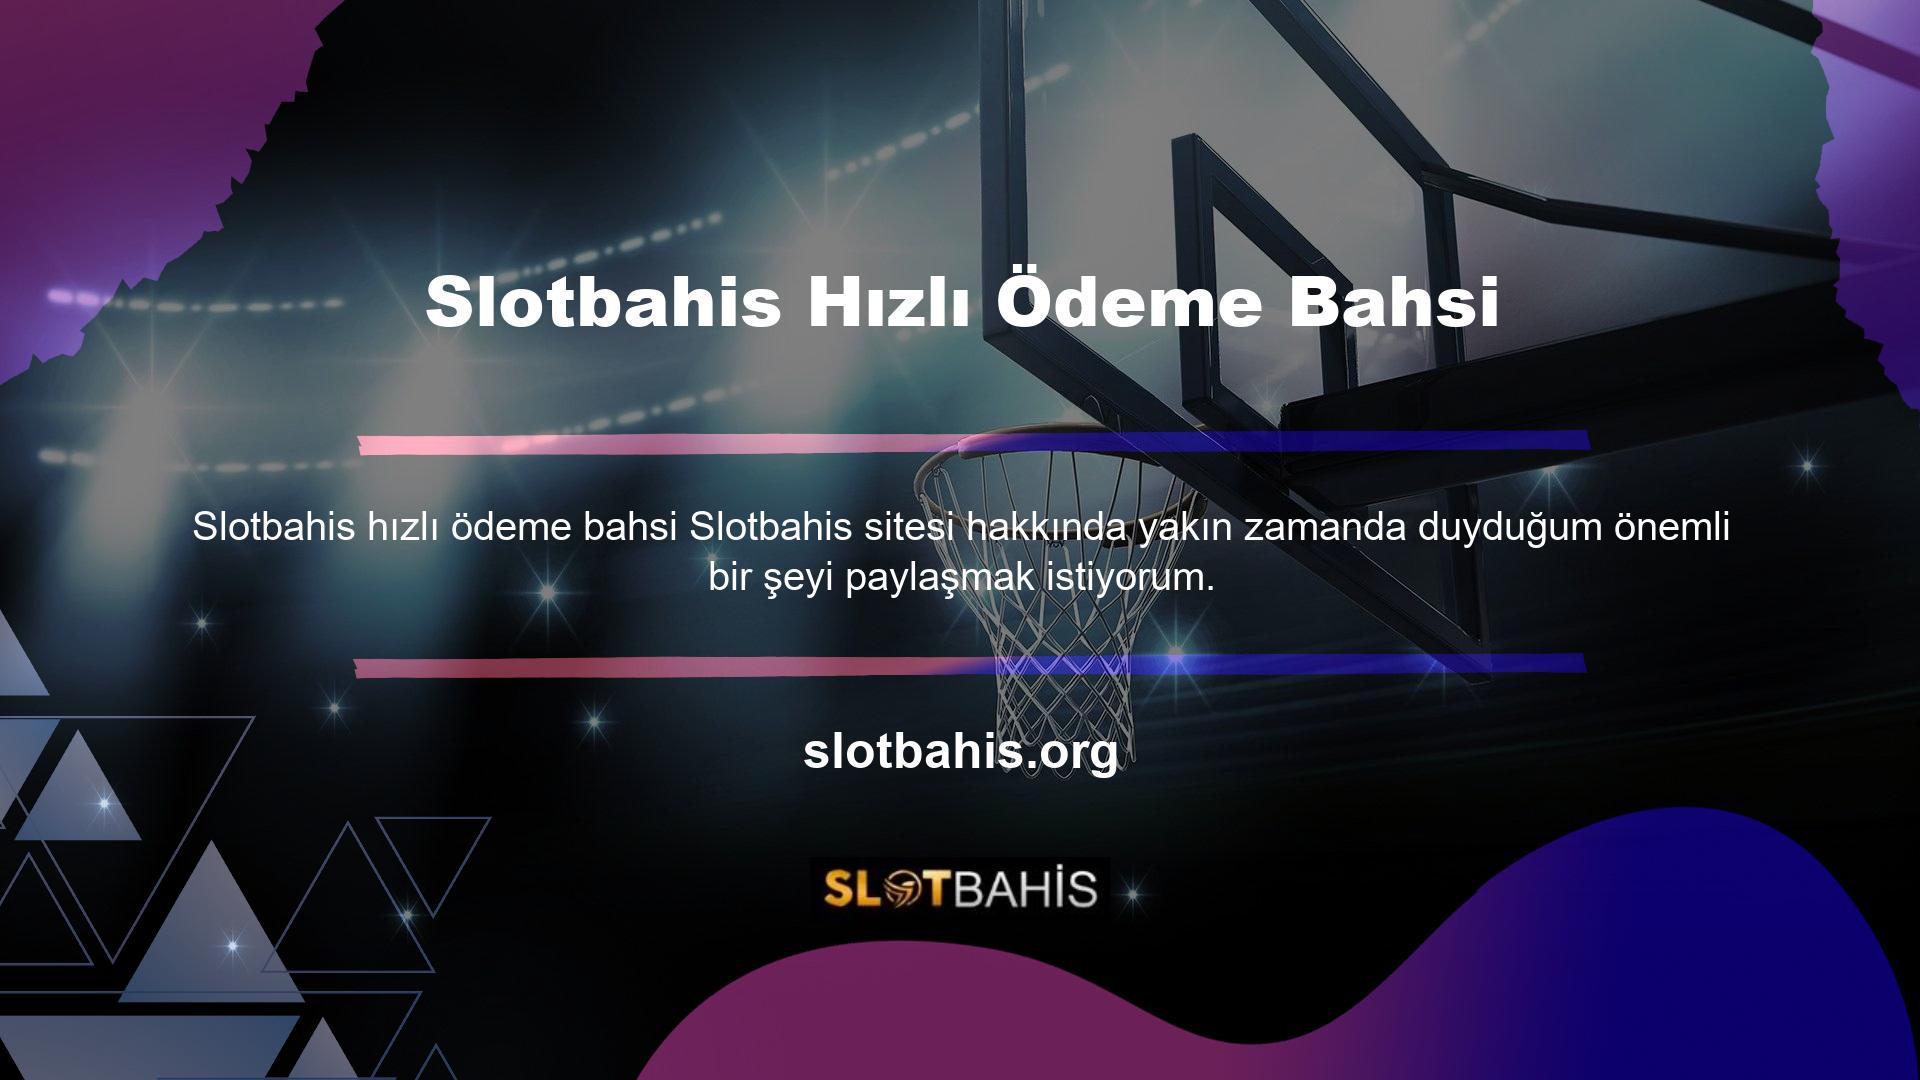 Slotbahis, Türkiye pazarında yeni olmasına rağmen Avrupa'da faaliyet gösteren bir ekibin ürünüdür